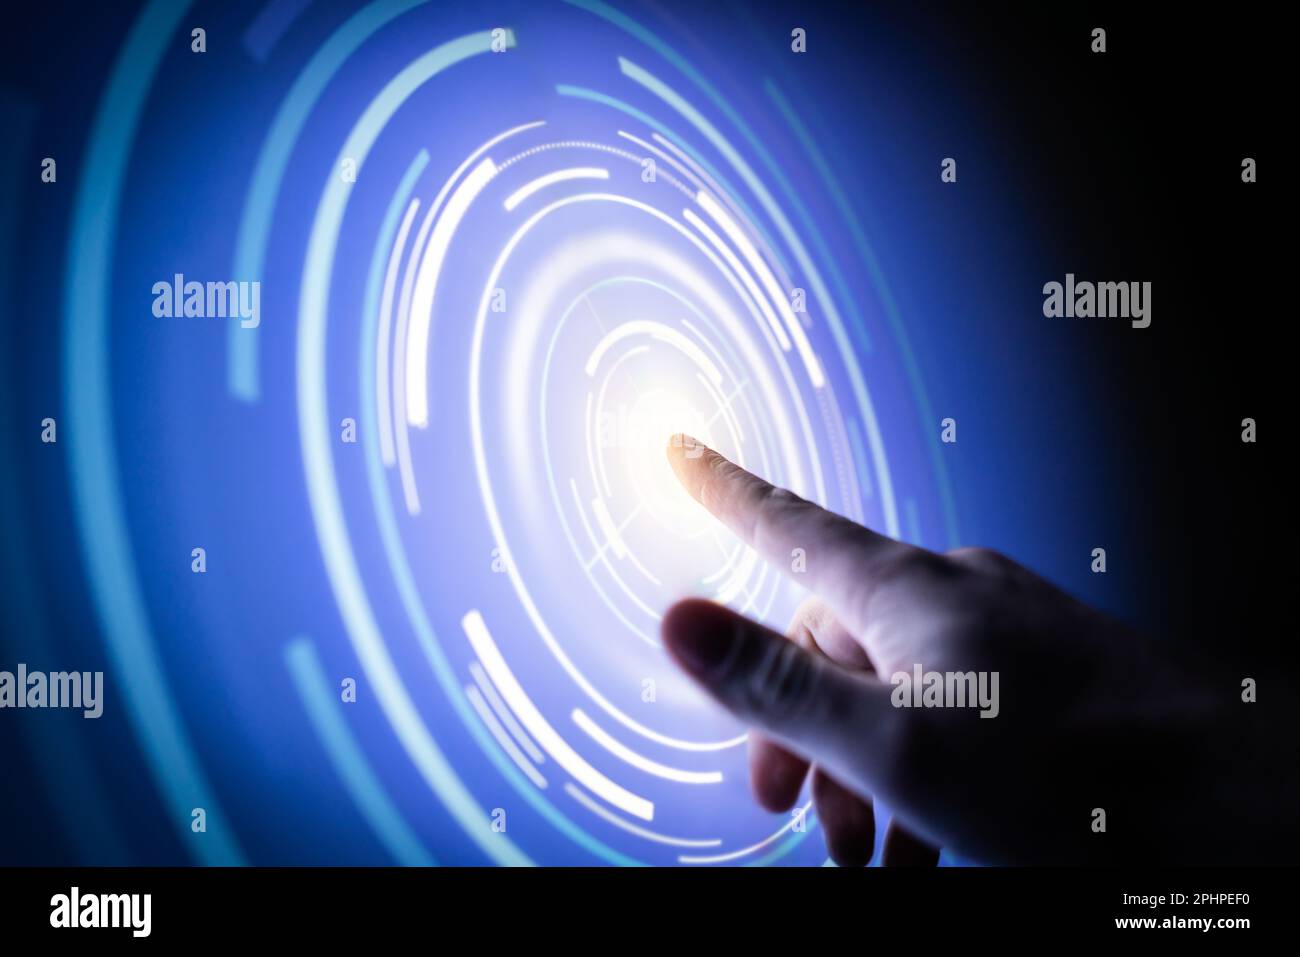 Touch-Technologie für die Zukunft. Digitales Netzwerk, Metaverse oder wissenschaftlich-technische Innovation. Futuristische Hologramm-Anzeige. Finger im abstrakten virtuellen Kreis. Stockfoto